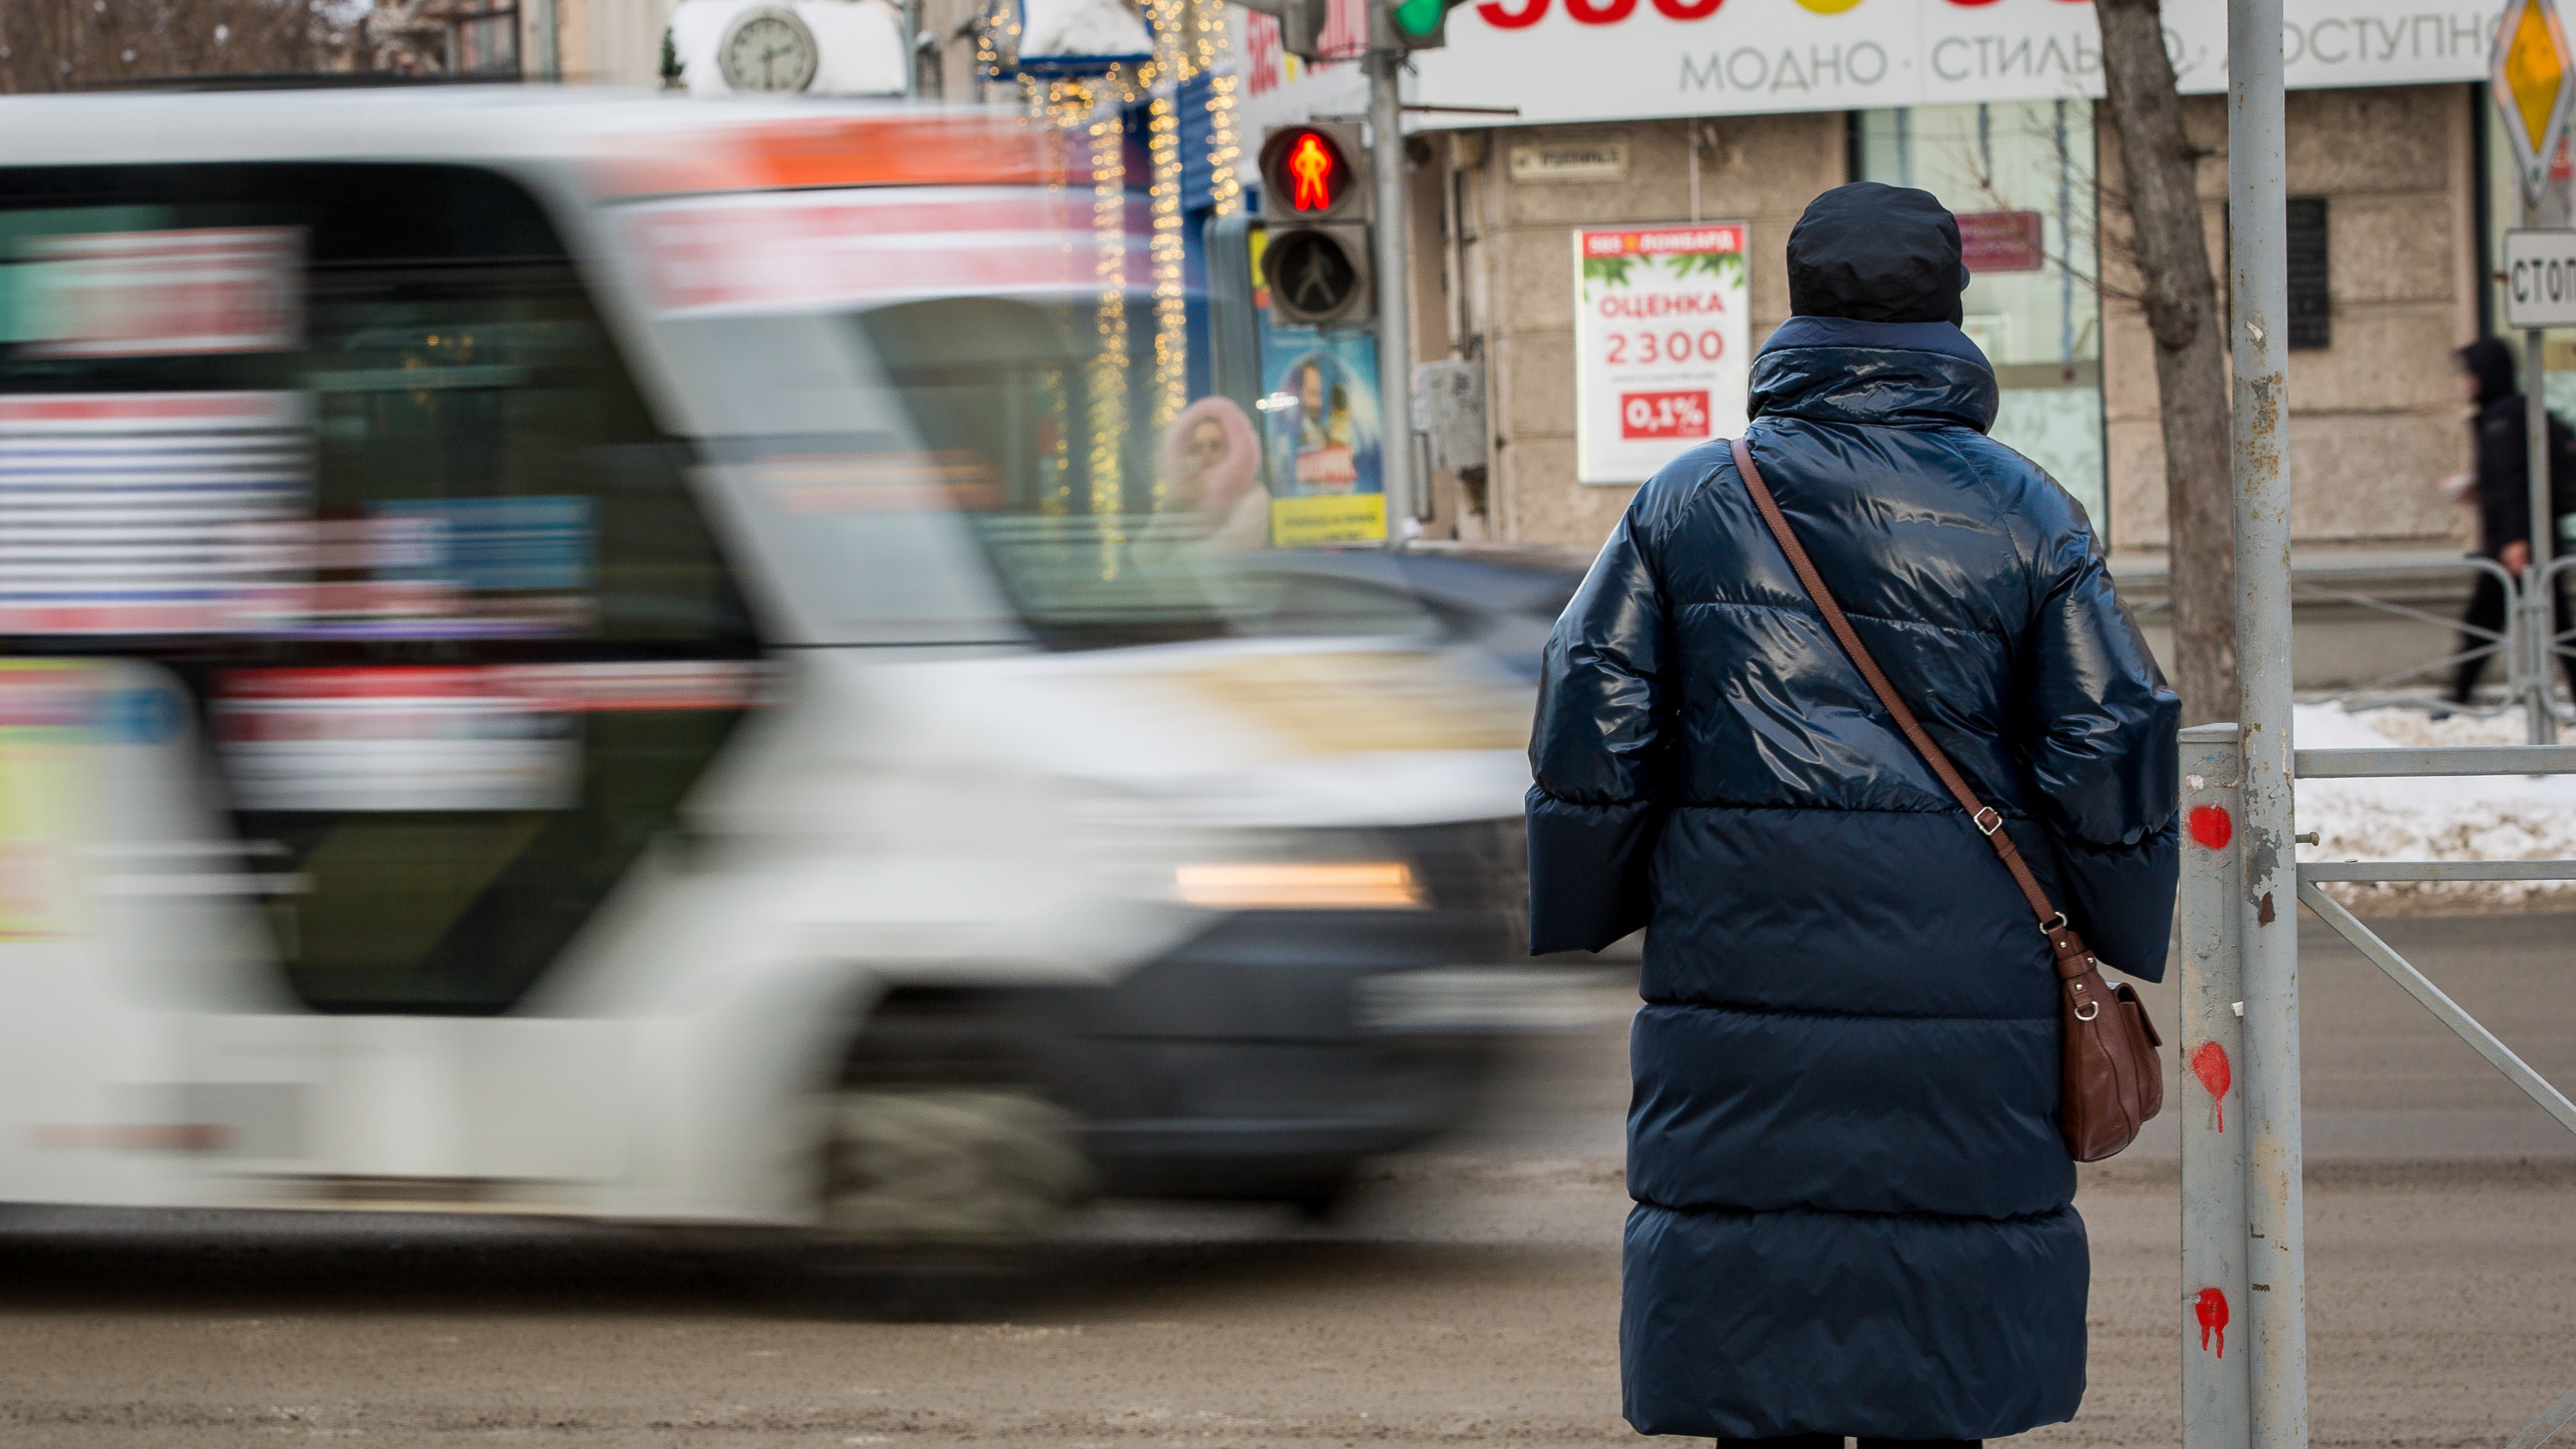 Как наличные и маршрутки убивают общественный транспорт и опустошают городской бюджет — мнение новосибирца